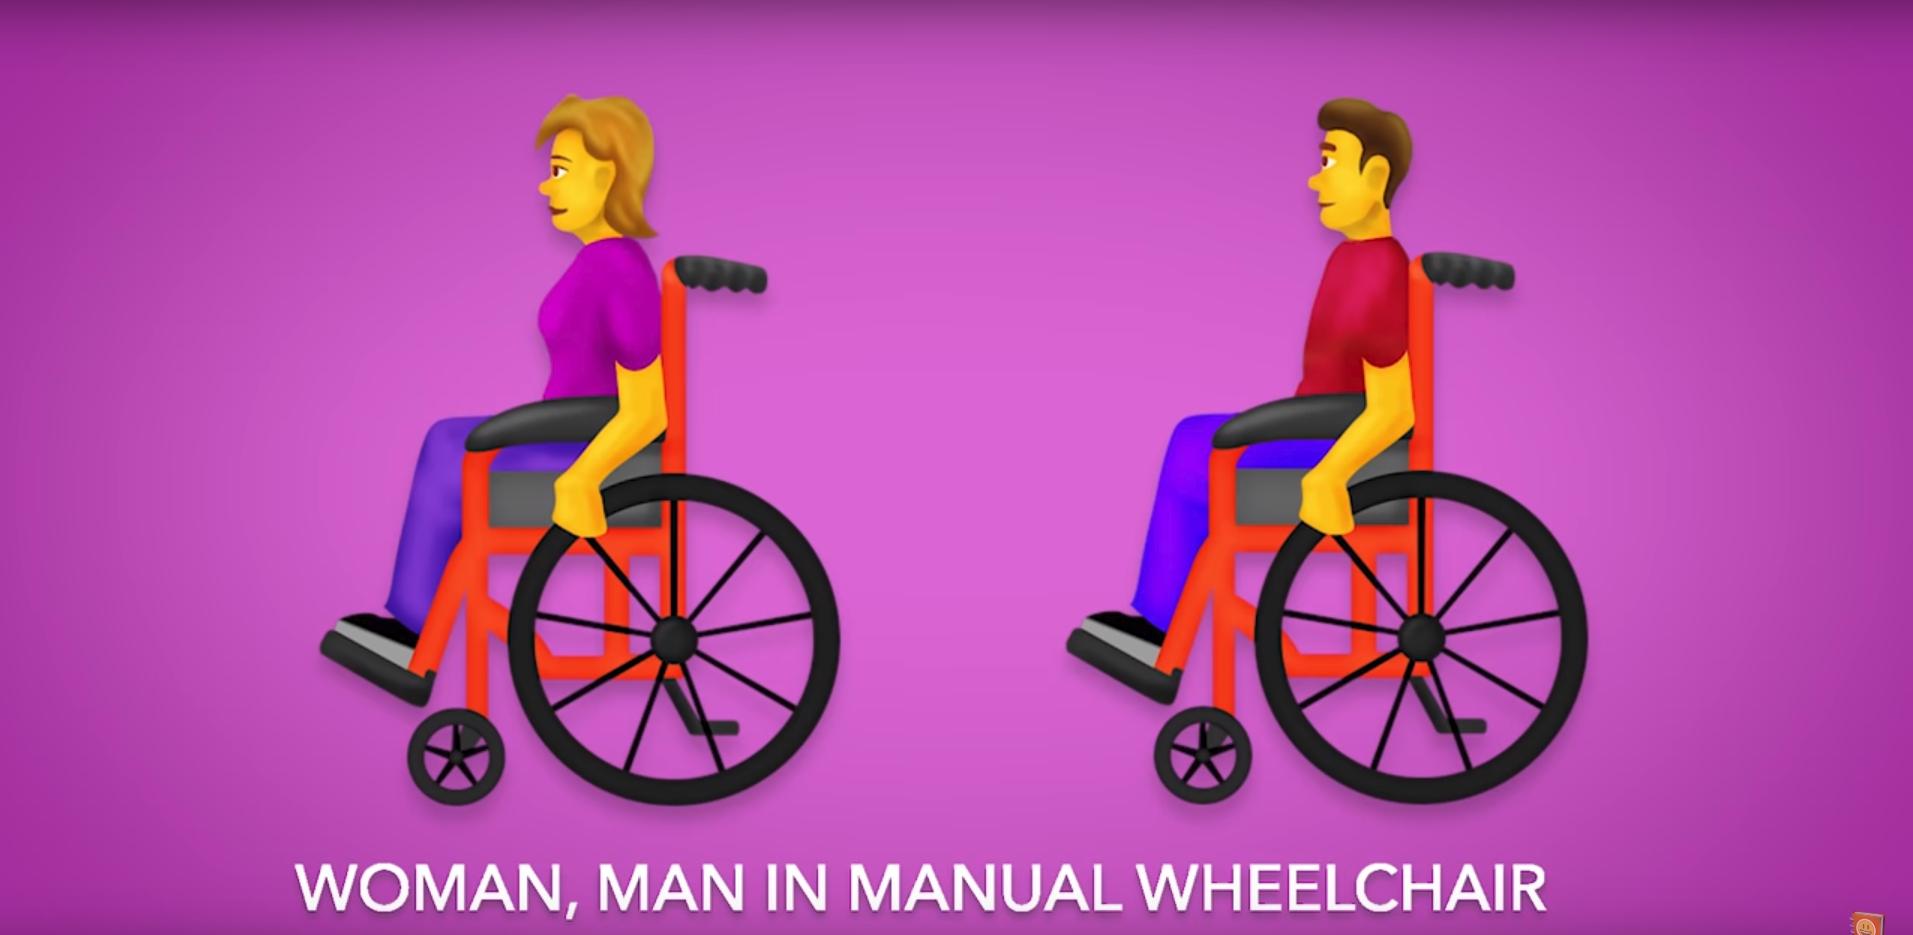 Icono de personas en silla de ruedas, en la nueva lista de los emojis de 2019